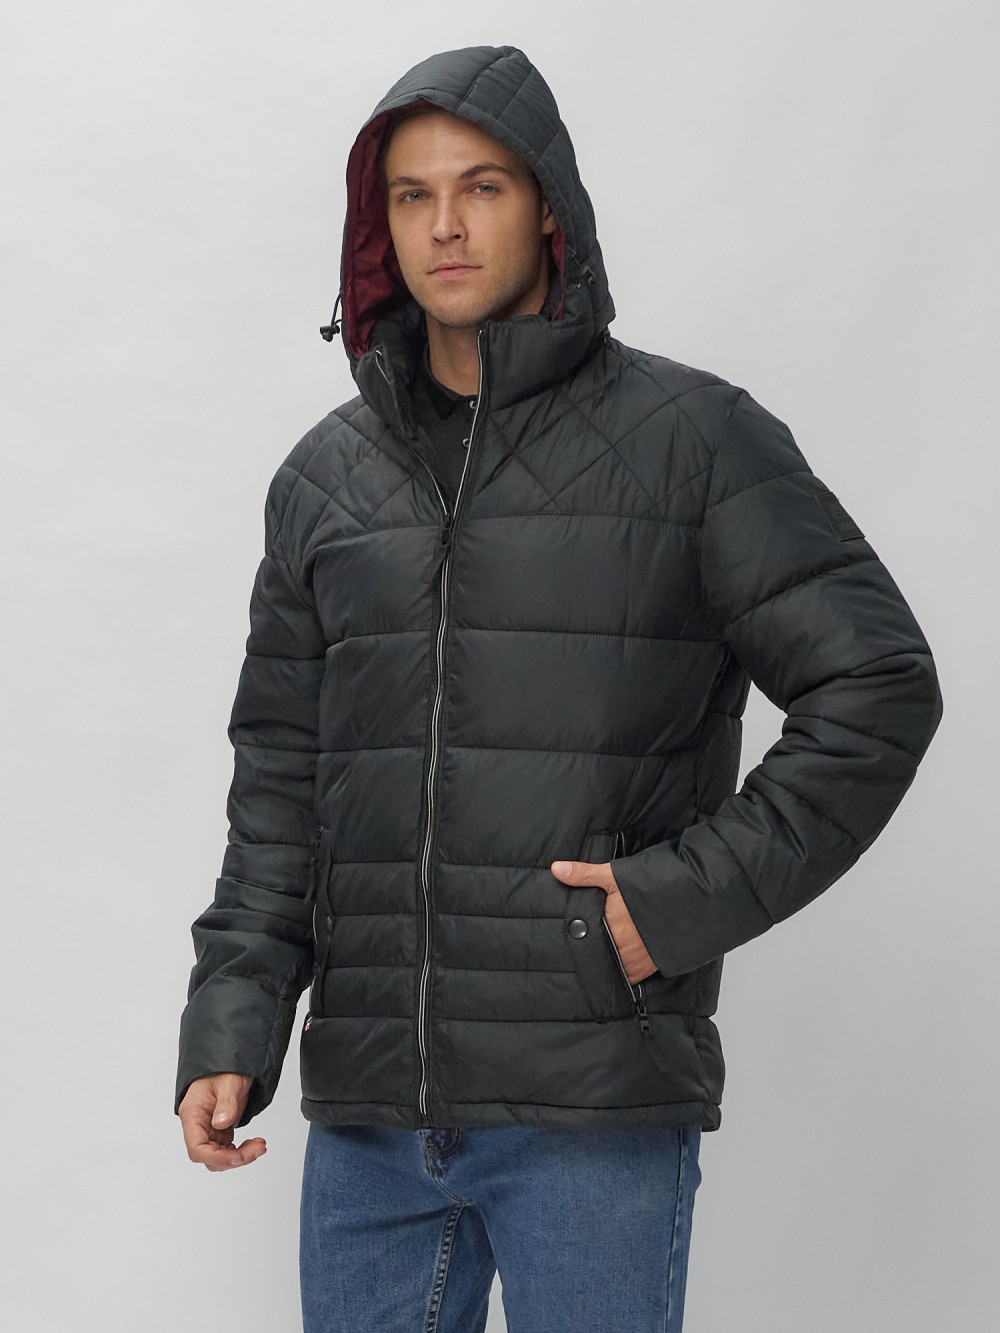 Купить куртку мужскую спортивную весеннюю оптом от производителя недорого в Москве 62179Ch 1